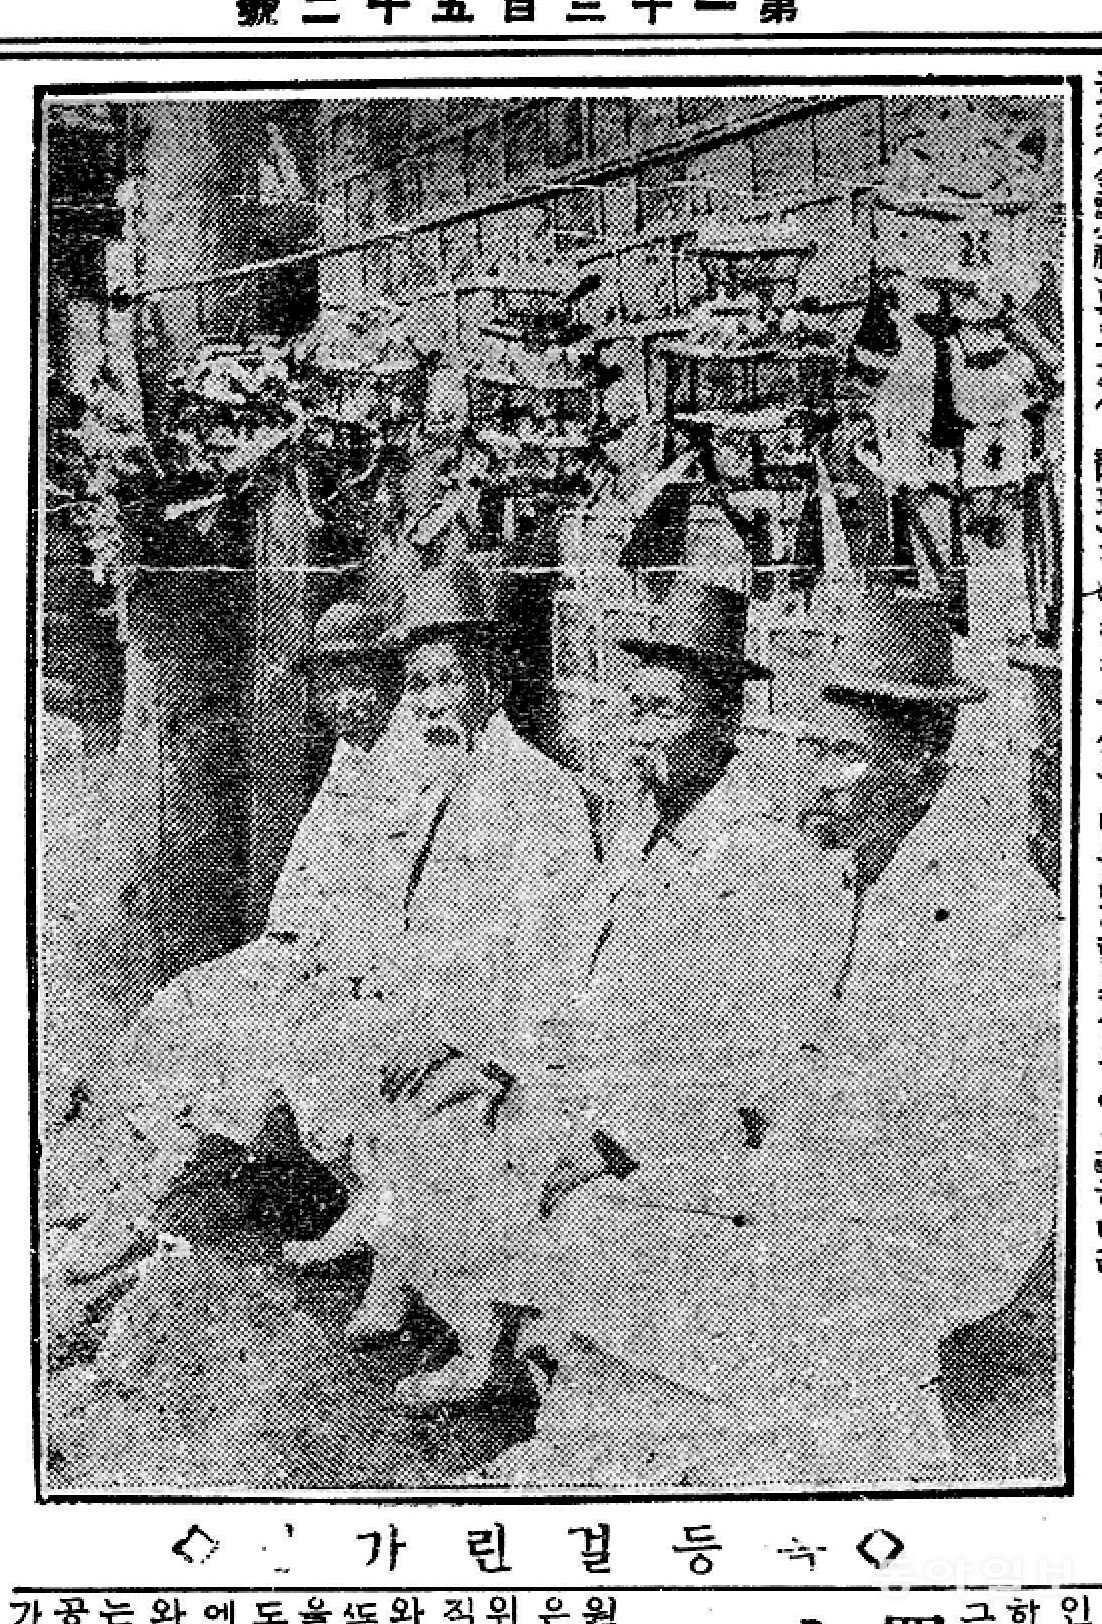 ◇ 복등(福燈) 걸린 가로(街路)/ 1924년 5월 11일 동아일보 2면 사진